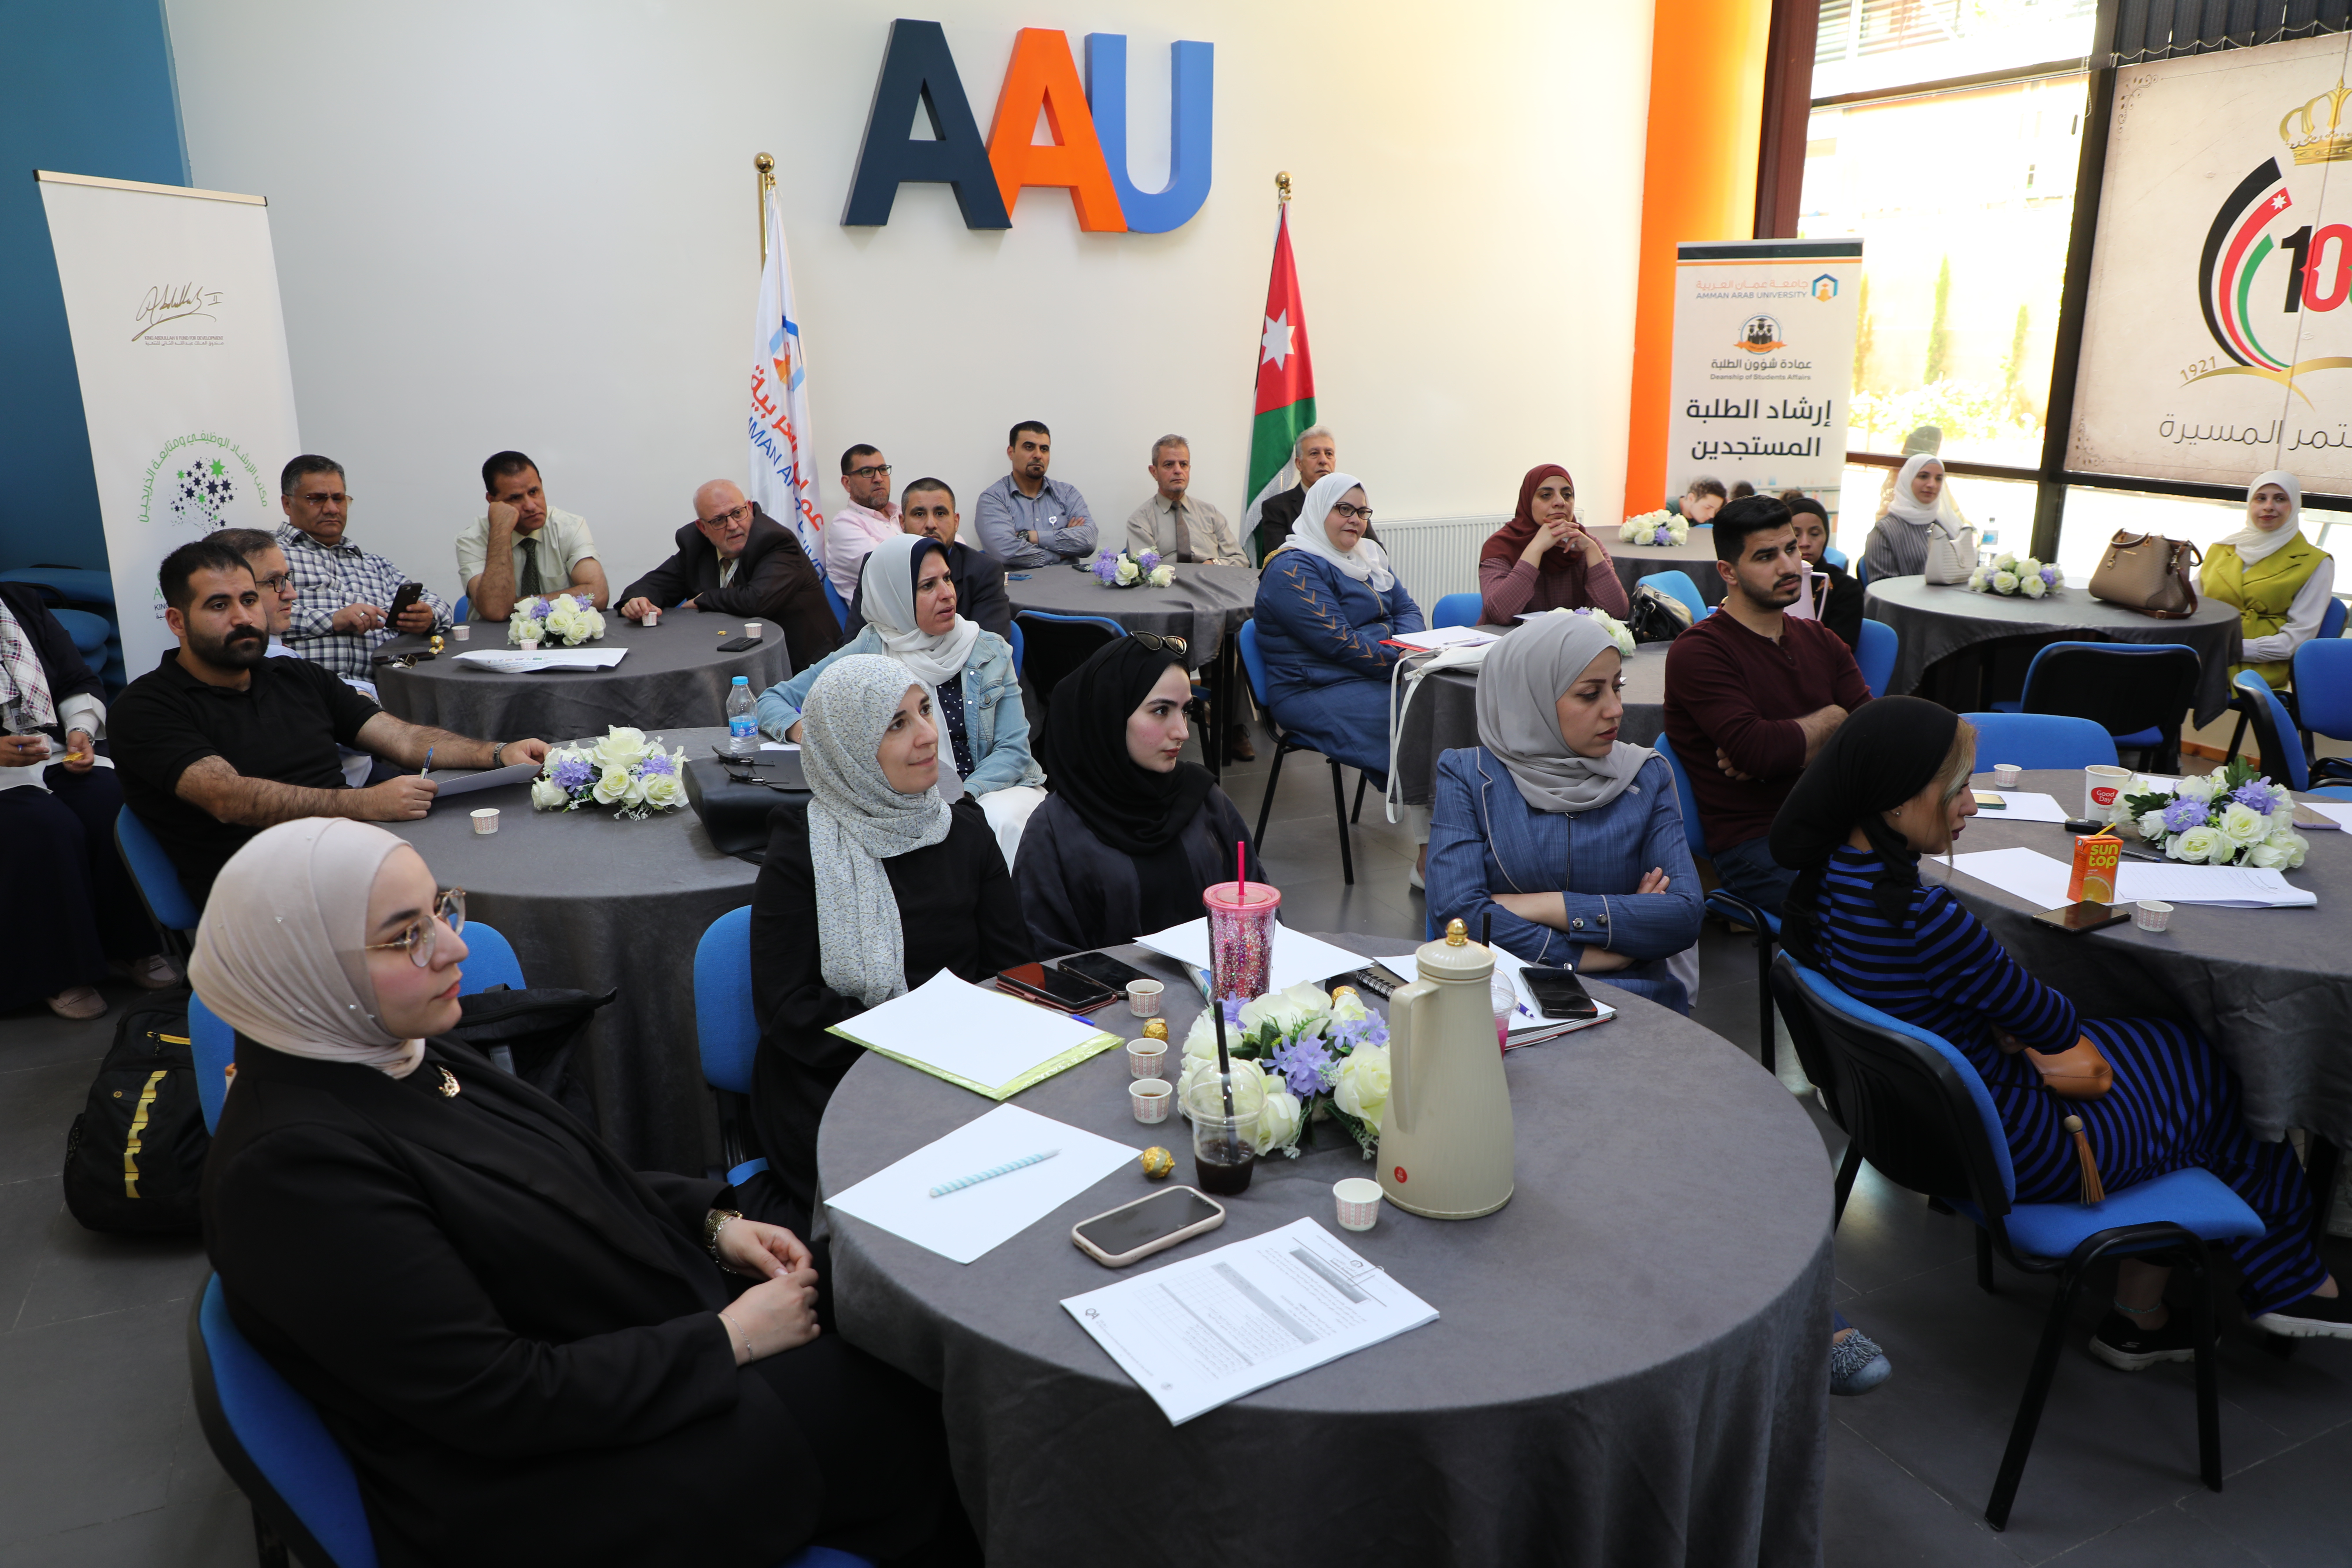 ورشة تدريبية حول " الحاجات العلاقاتية " في "عمان العربية"2